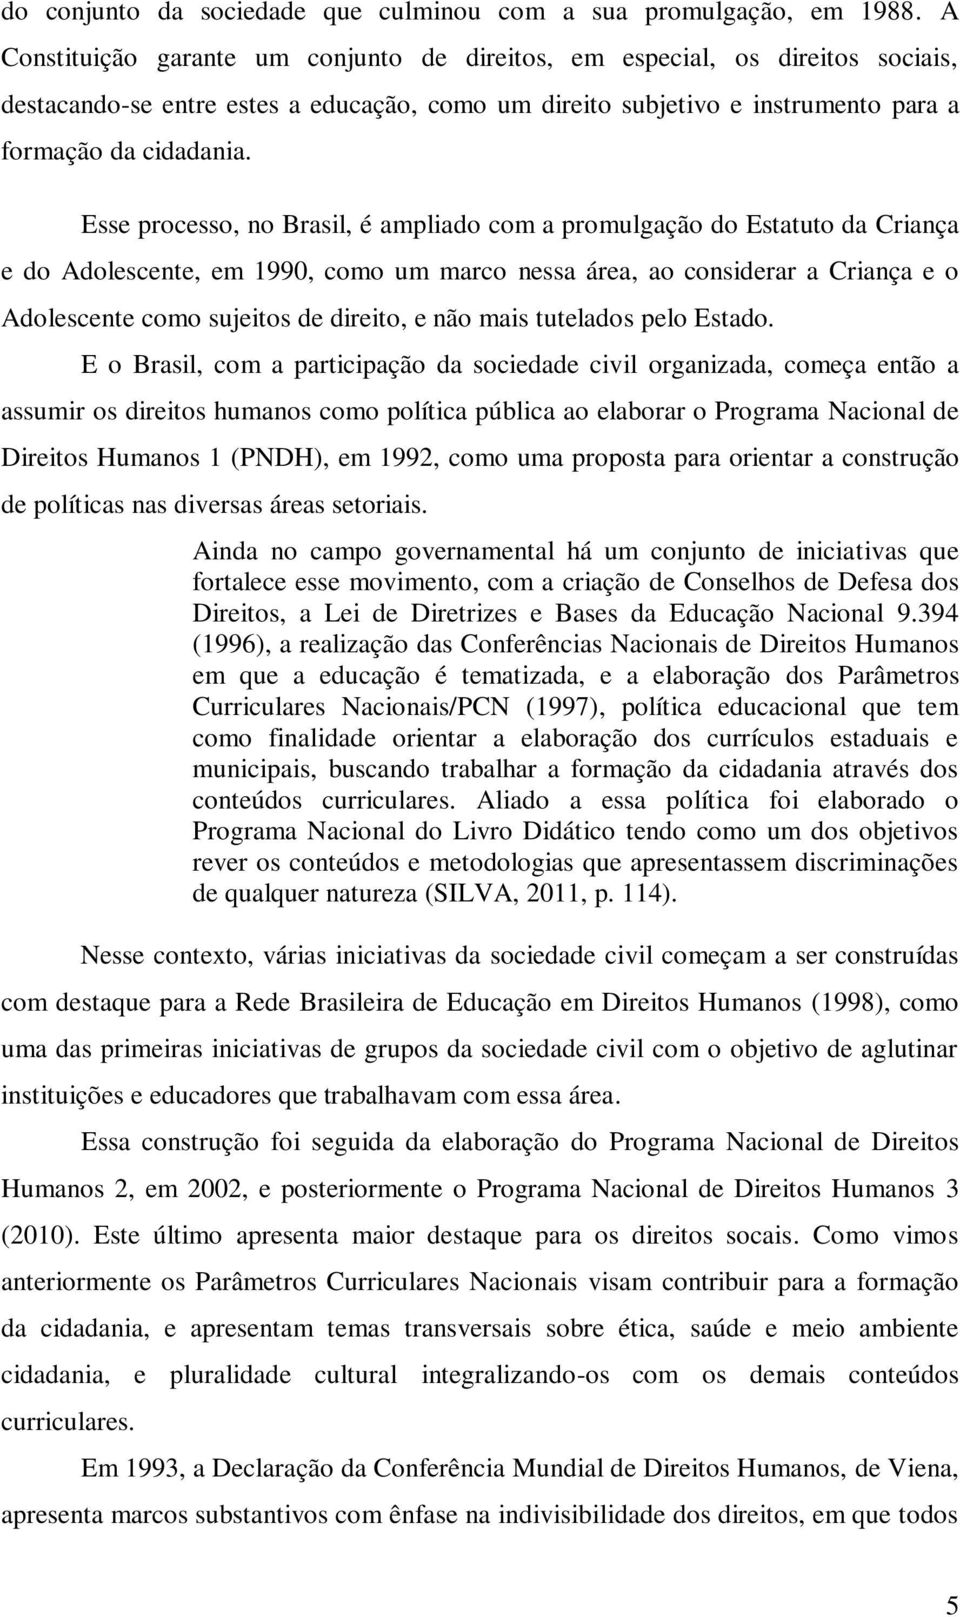 Esse processo, no Brasil, é ampliado com a promulgação do Estatuto da Criança e do Adolescente, em 1990, como um marco nessa área, ao considerar a Criança e o Adolescente como sujeitos de direito, e